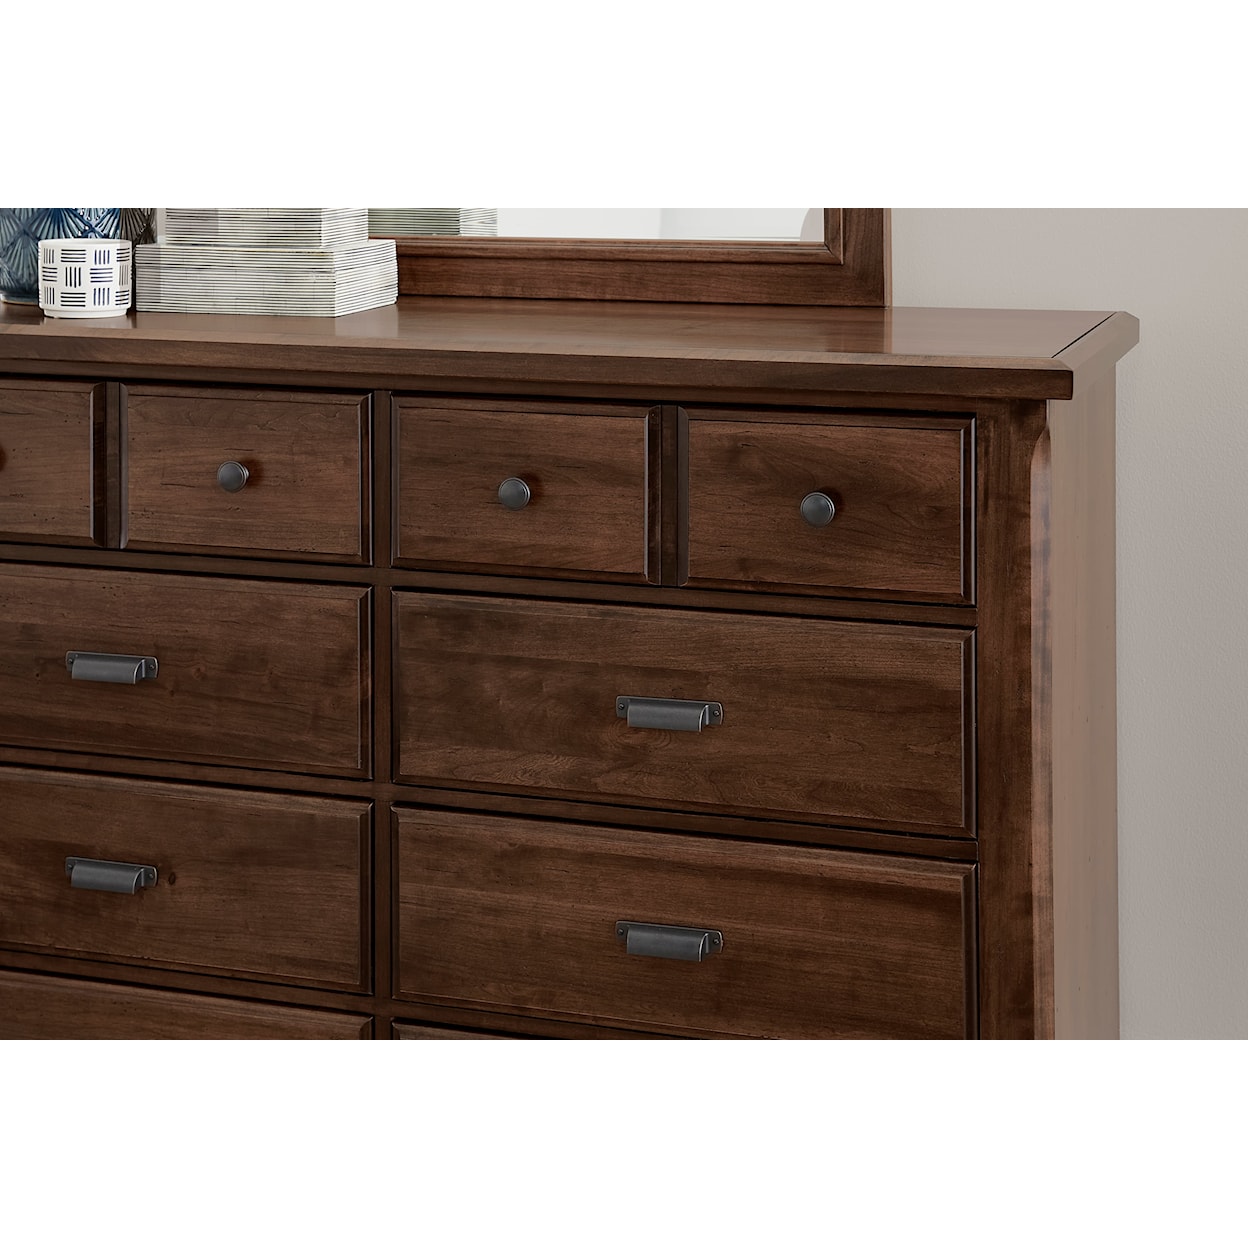 Vaughan Bassett Lancaster County 8-Drawer Dresser